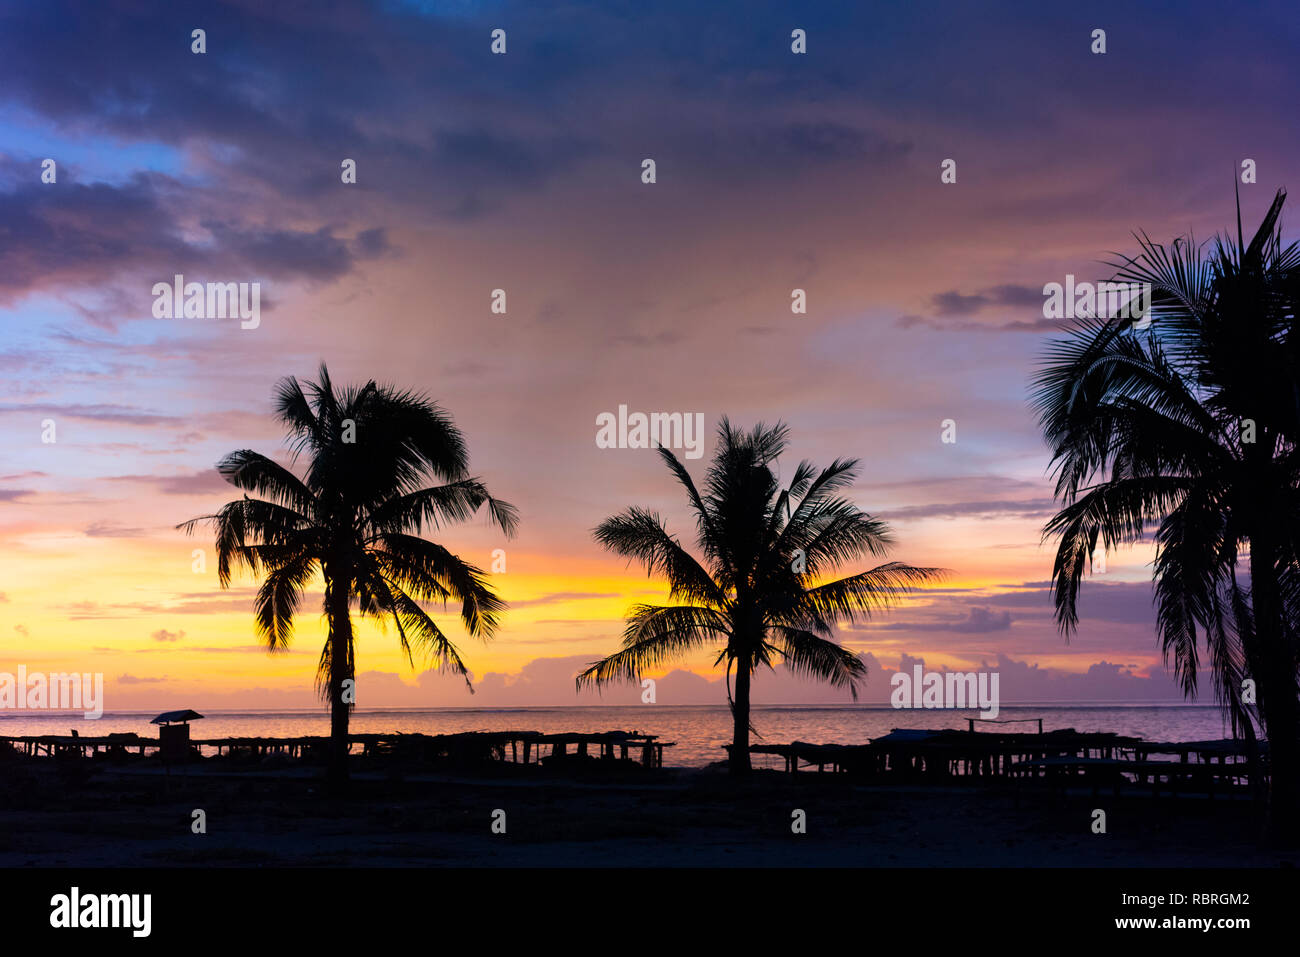 Sulla spiaggia, sull'oceano, palme, stendini e tramonto a Nemberala Rote sull isola. Foto Stock